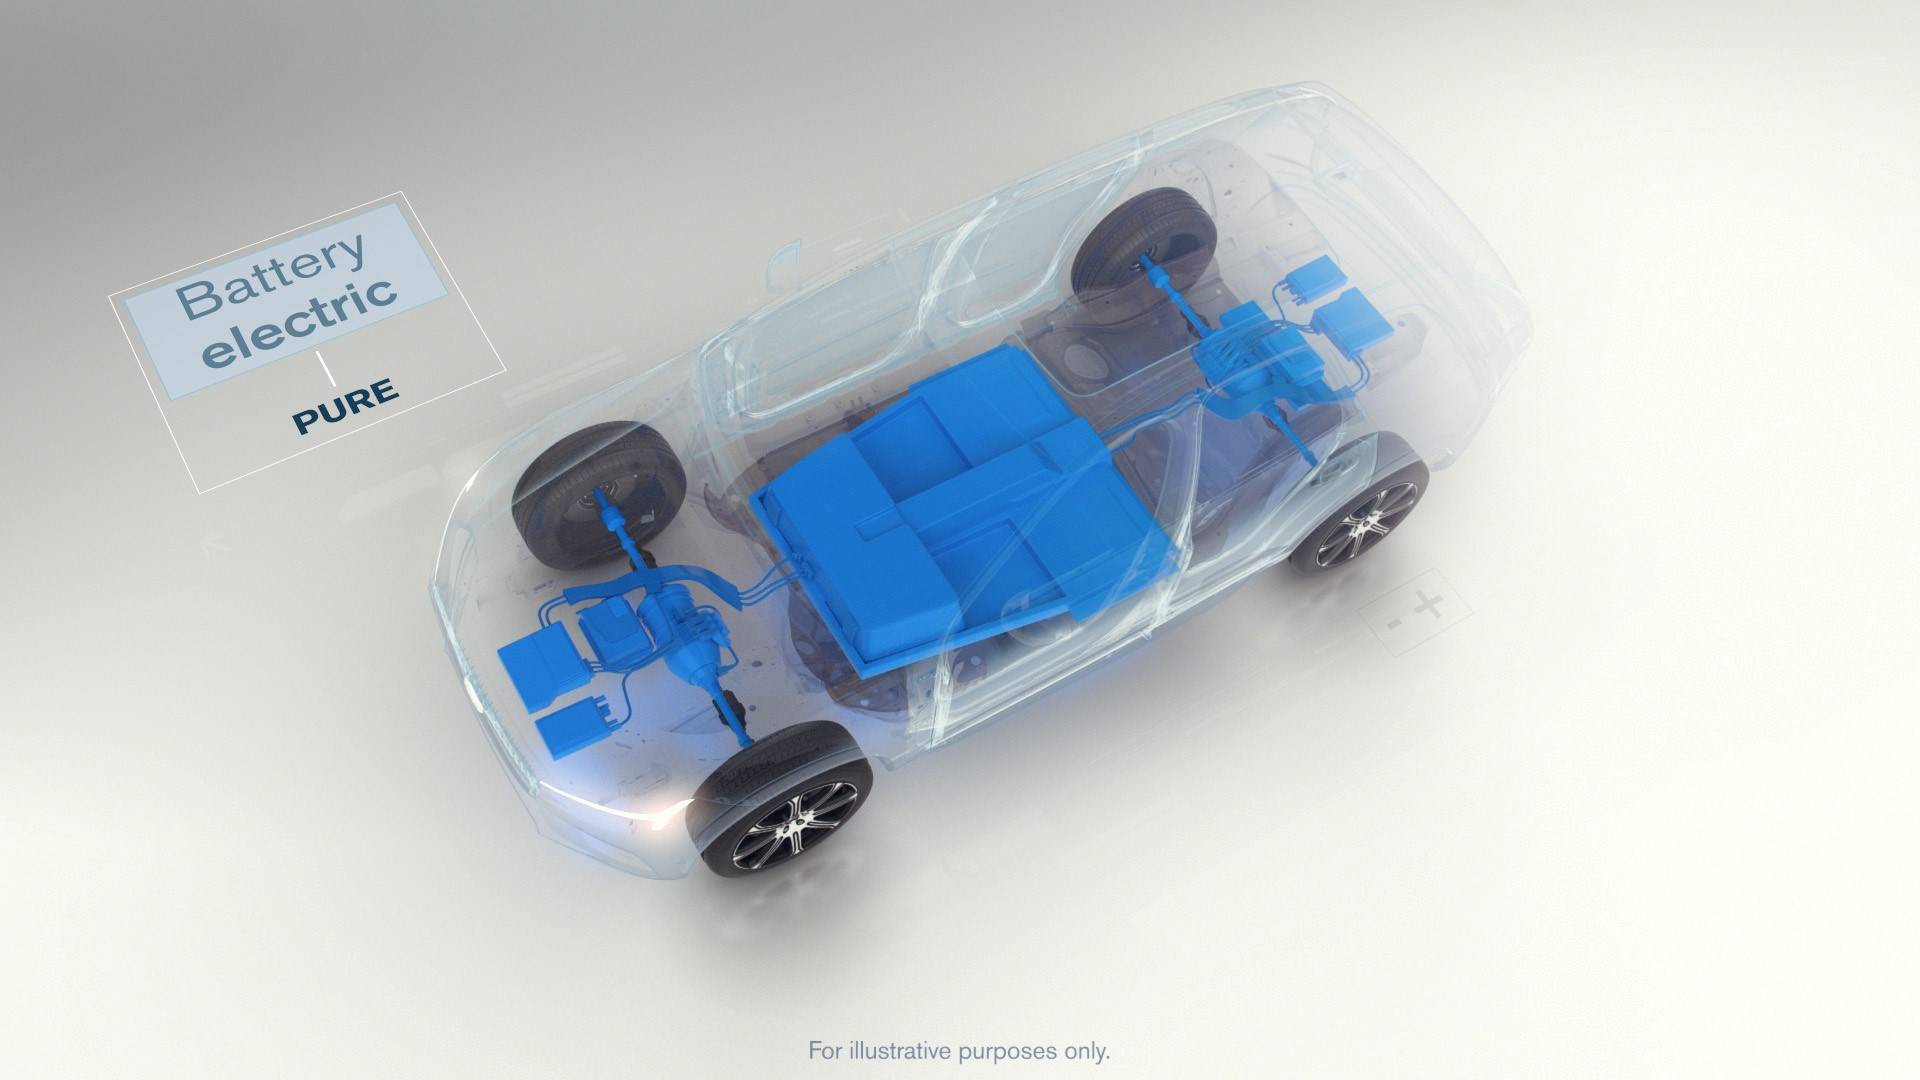 Volvo prelazi na struju: Svaki novi auto imat će elektromotor